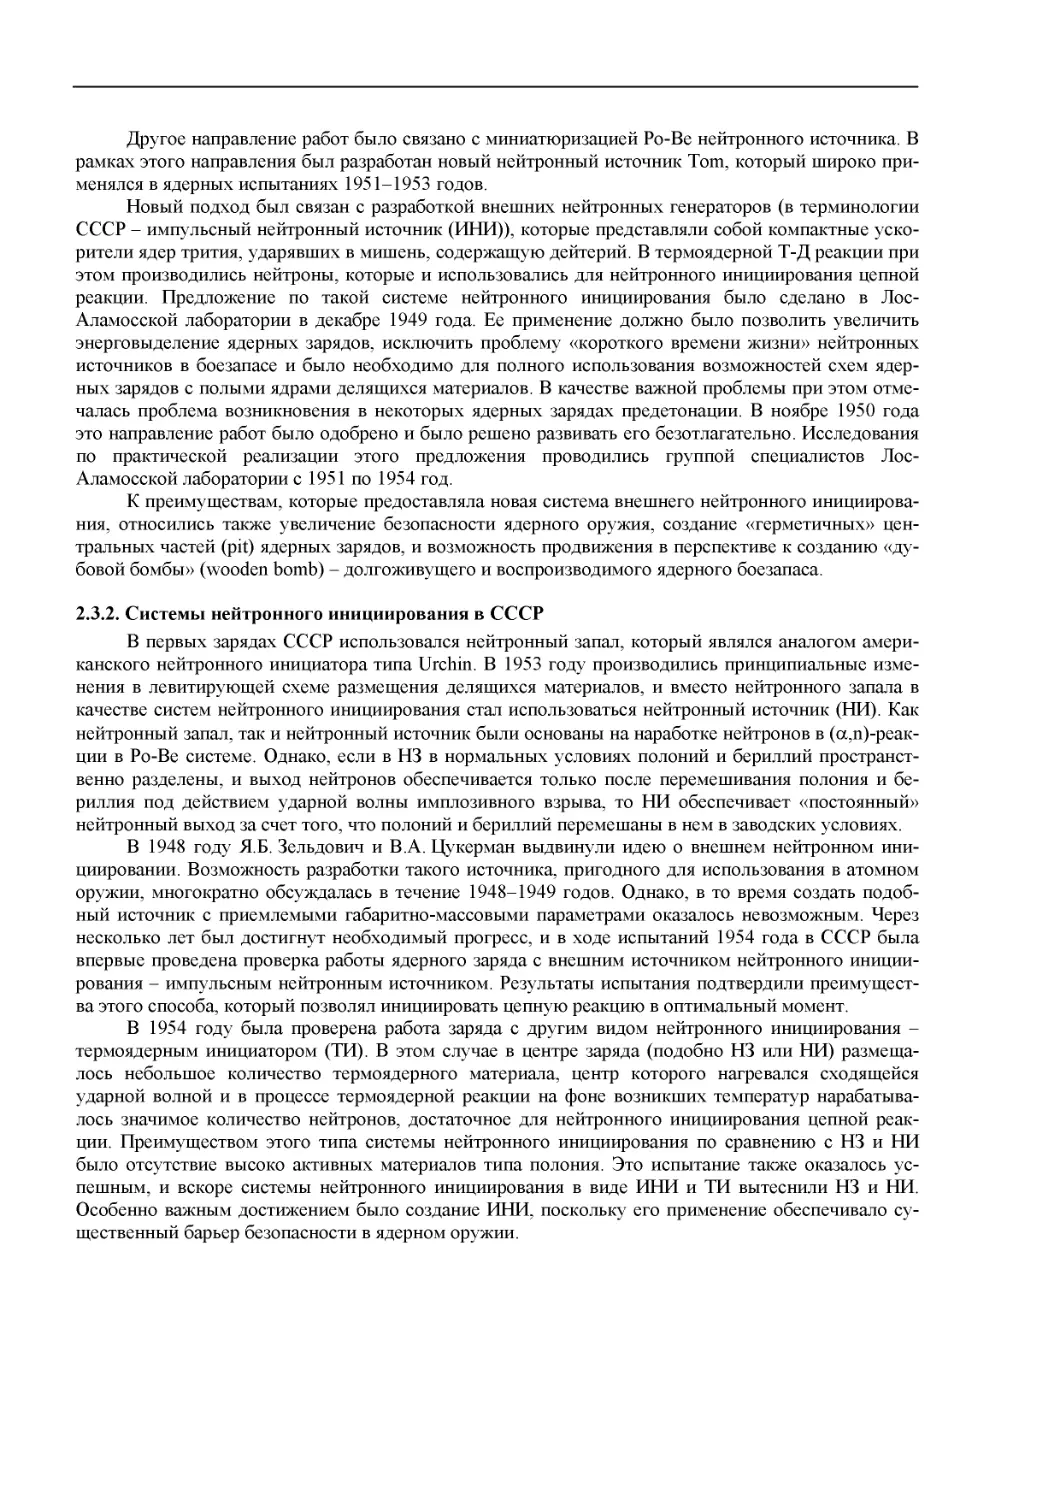 2.3.2. Системы нейтронного инициирования в СССР